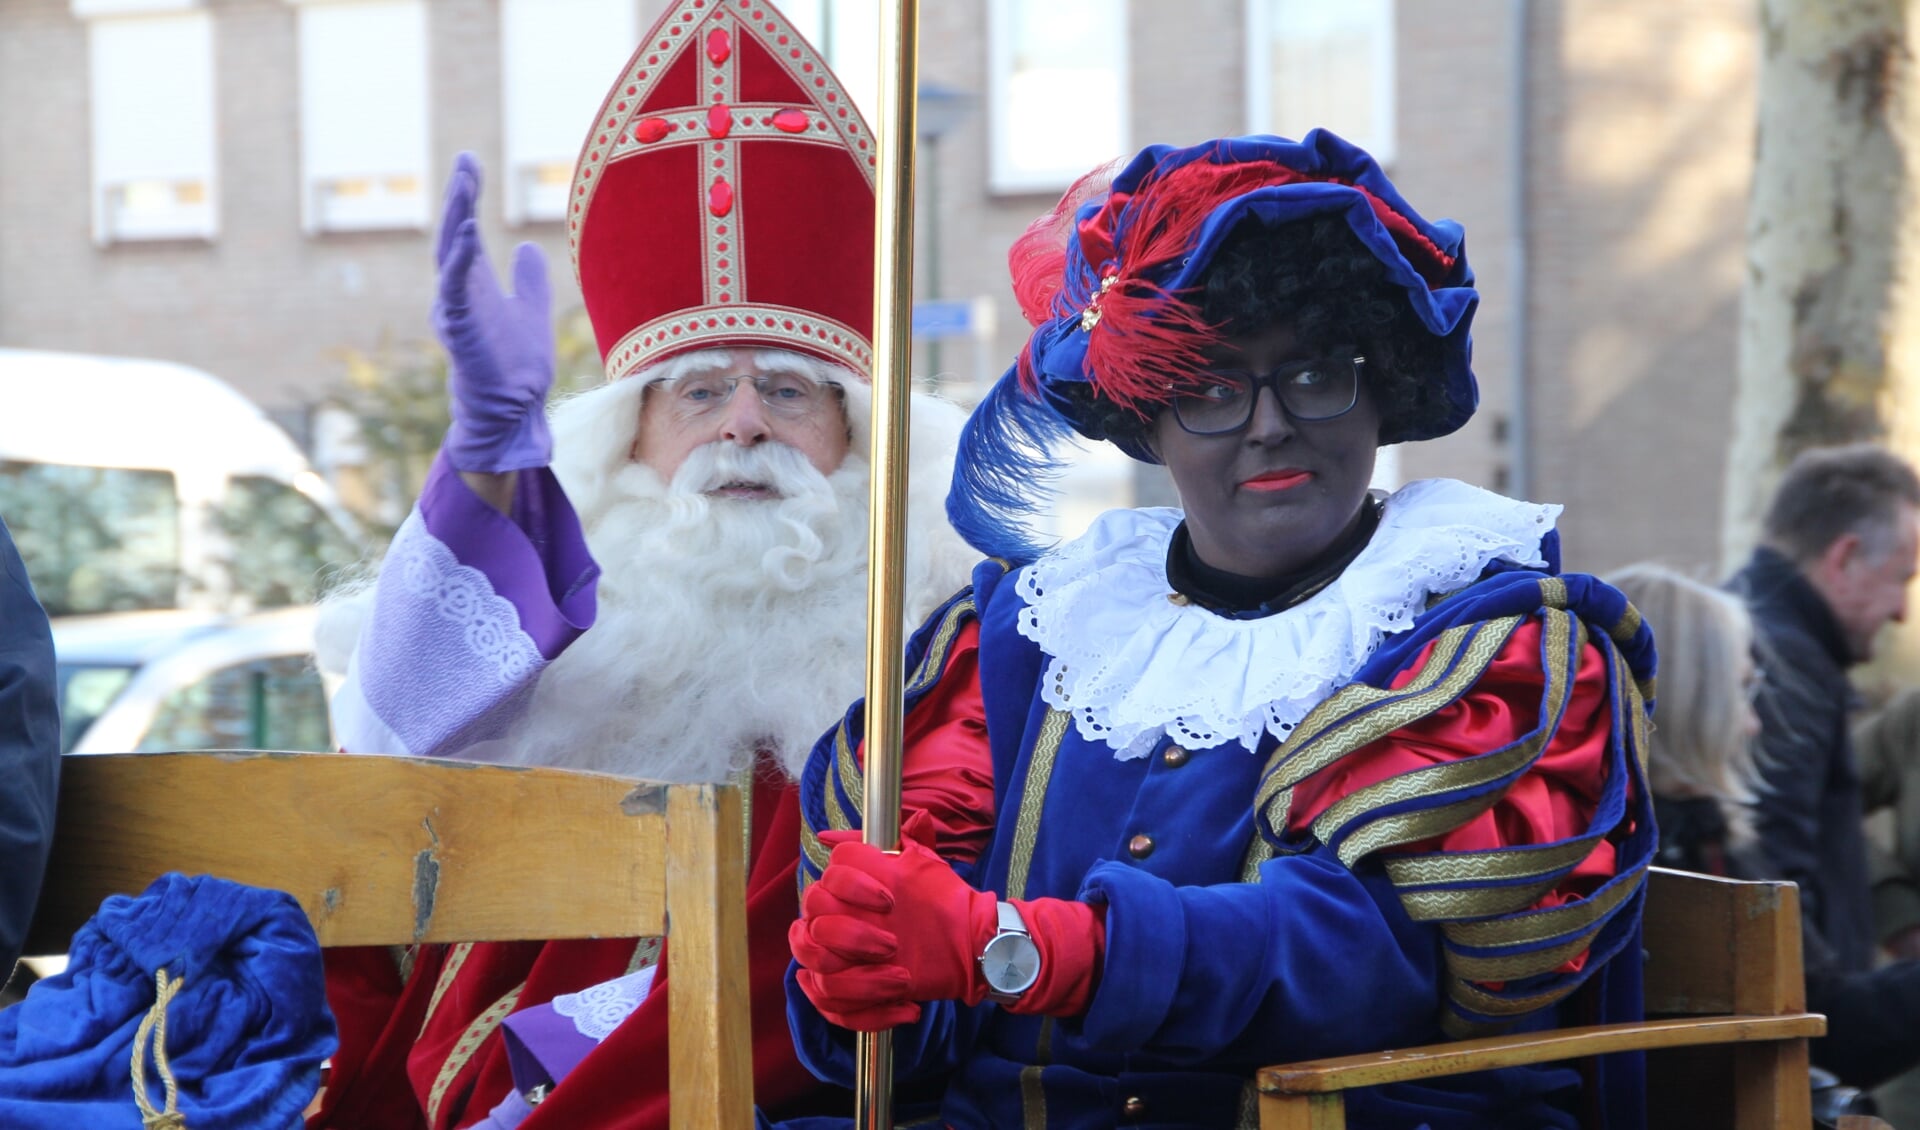 Natuurlijk komt Sinterklaas ook dit jaar naar Heesch. (Foto: Bram van Ravenstein)